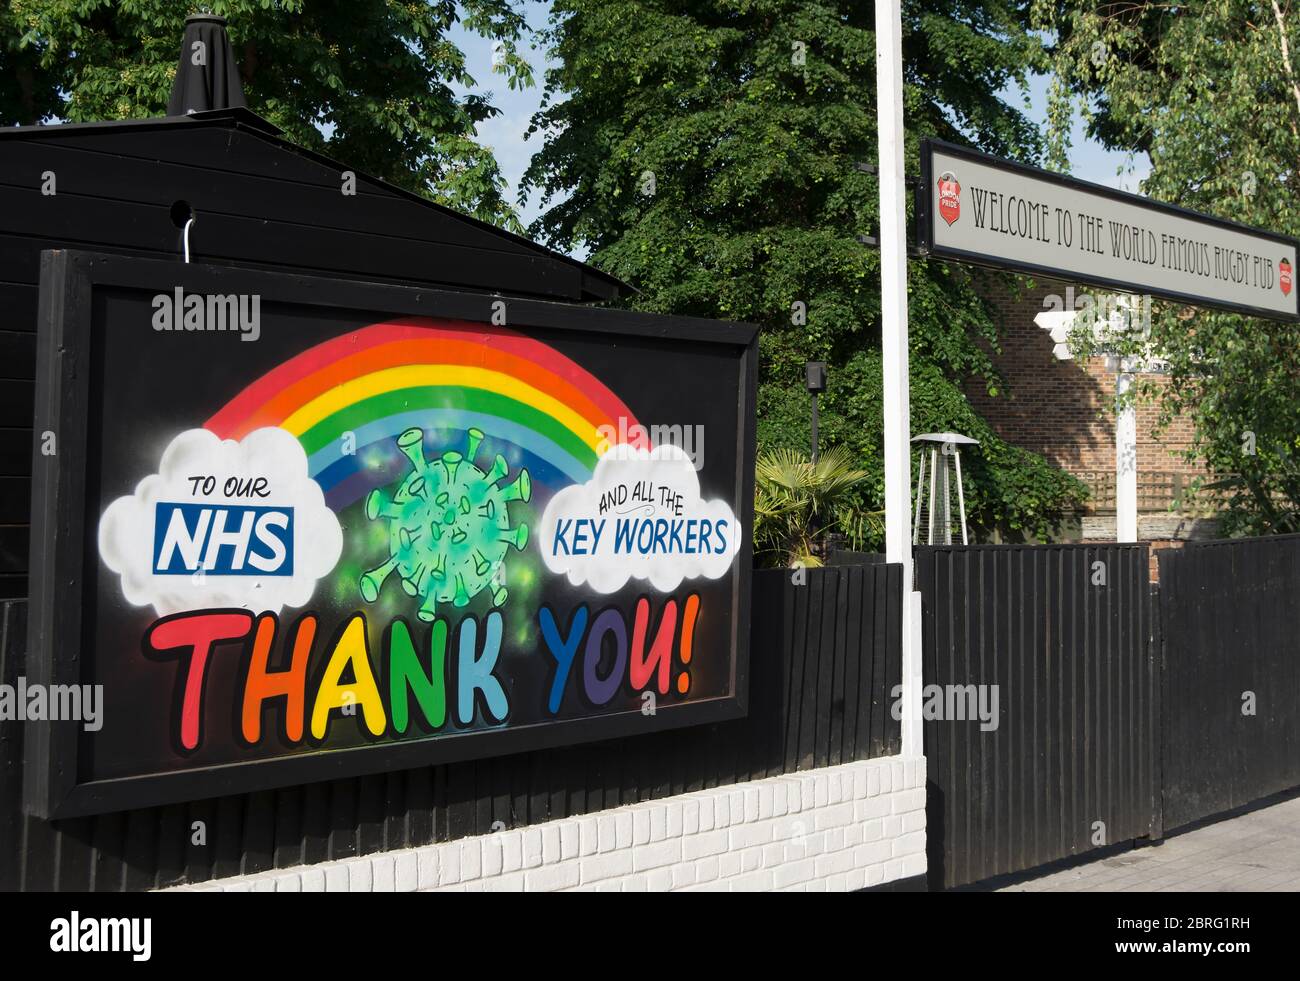 Painted rainbow und danke Nachricht für nhs-Mitarbeiter und Schlüsselarbeiter während der covid 19 Lockdown, Kohl Patch Pub, twickenham, england Stockfoto